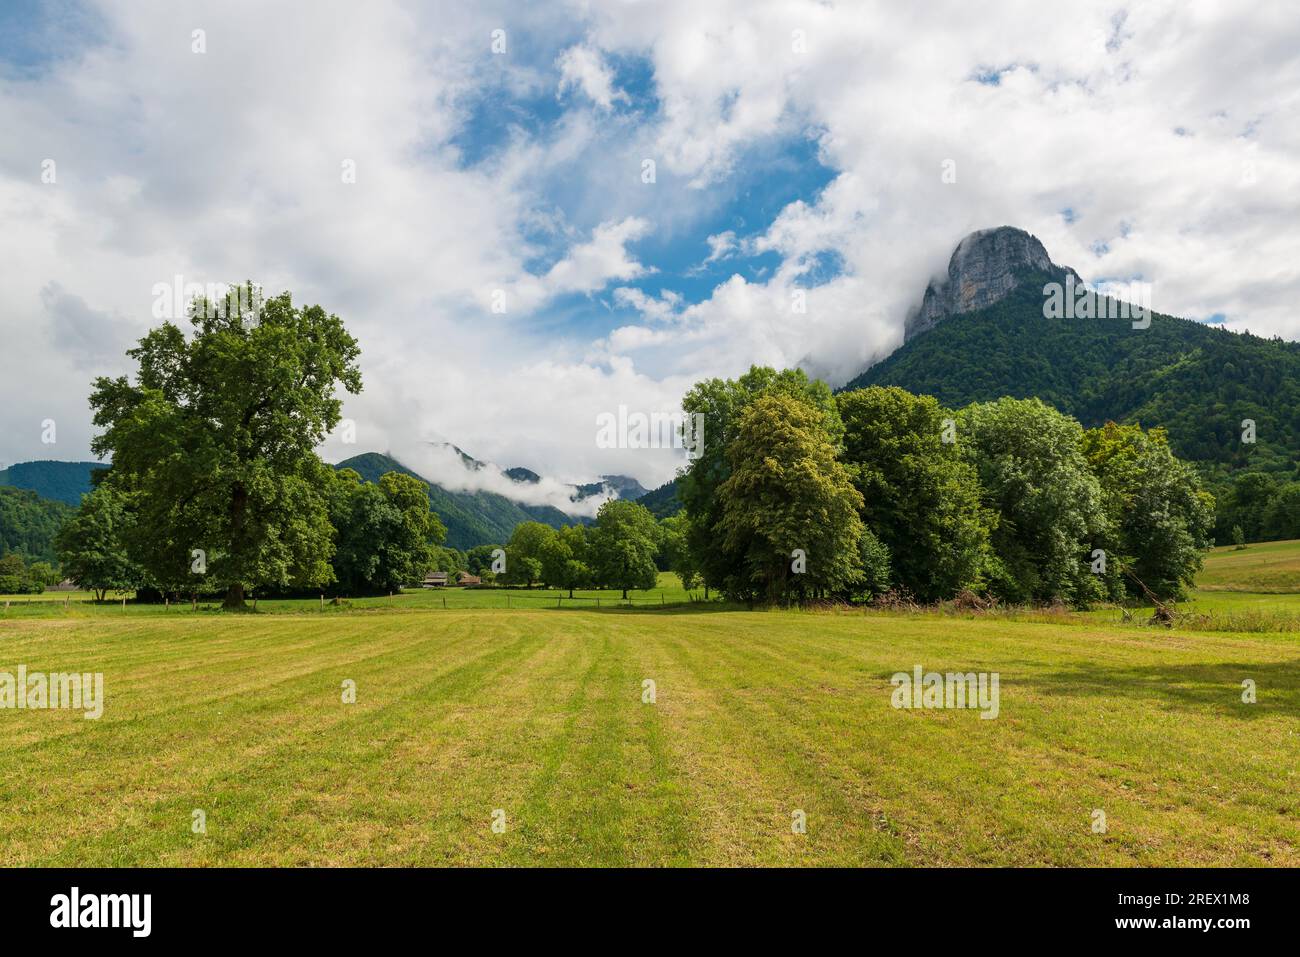 Paysage rural en France près du lac d'Annecy. Champ de ferme verte avec clôture, arbres et montagnes sur le fond Banque D'Images